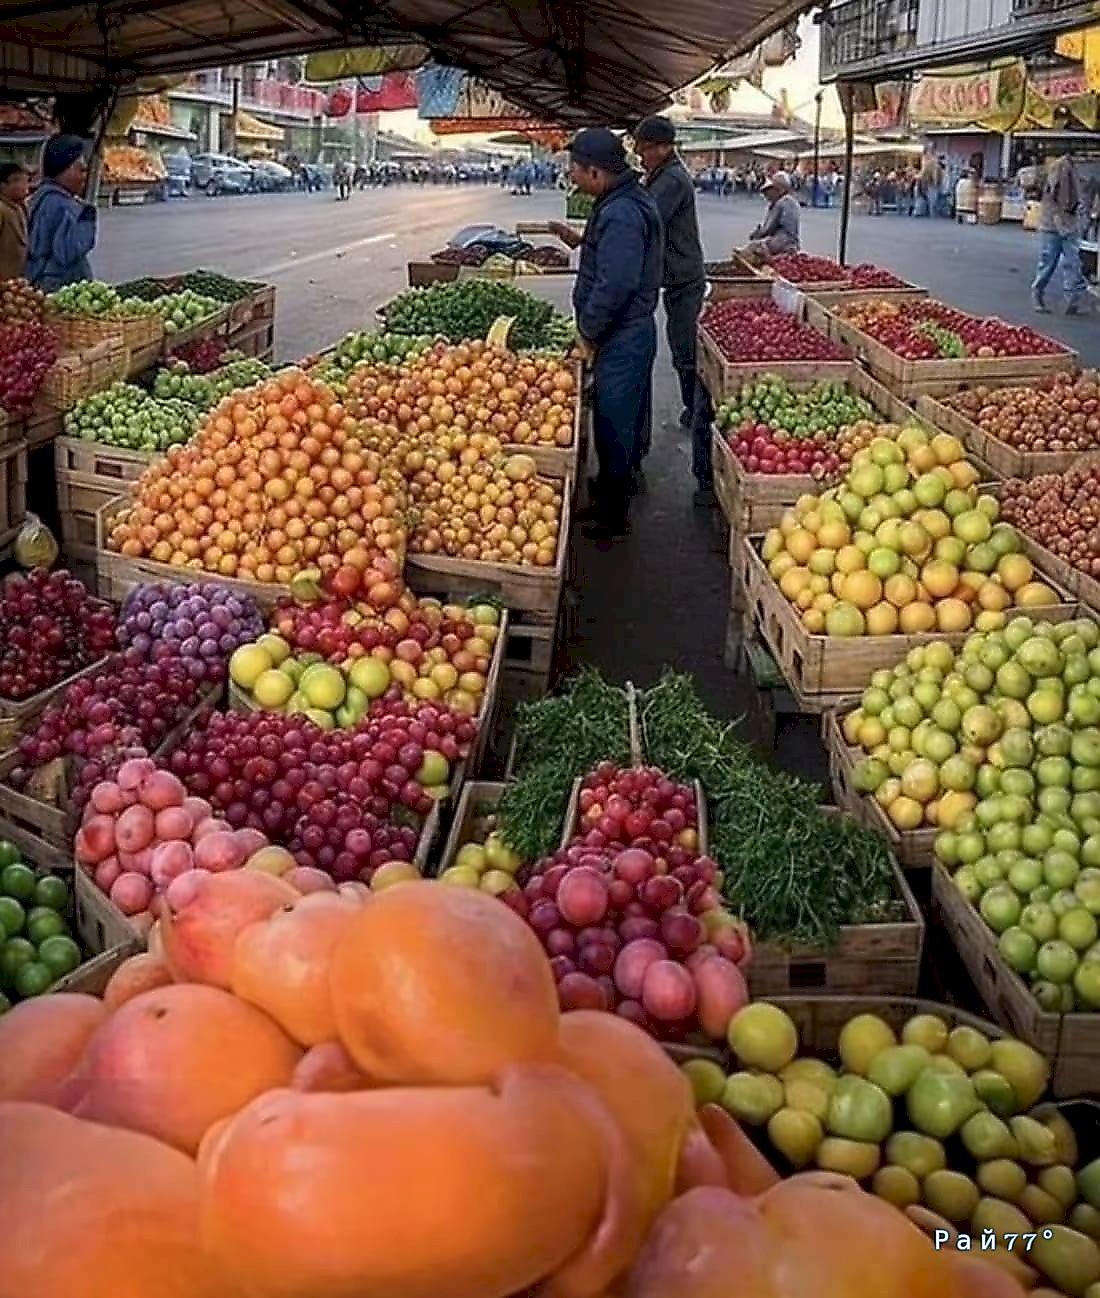 Интернет-пользователи разглядели очертания Иисуса в фруктах выложенных на прилавке магазина